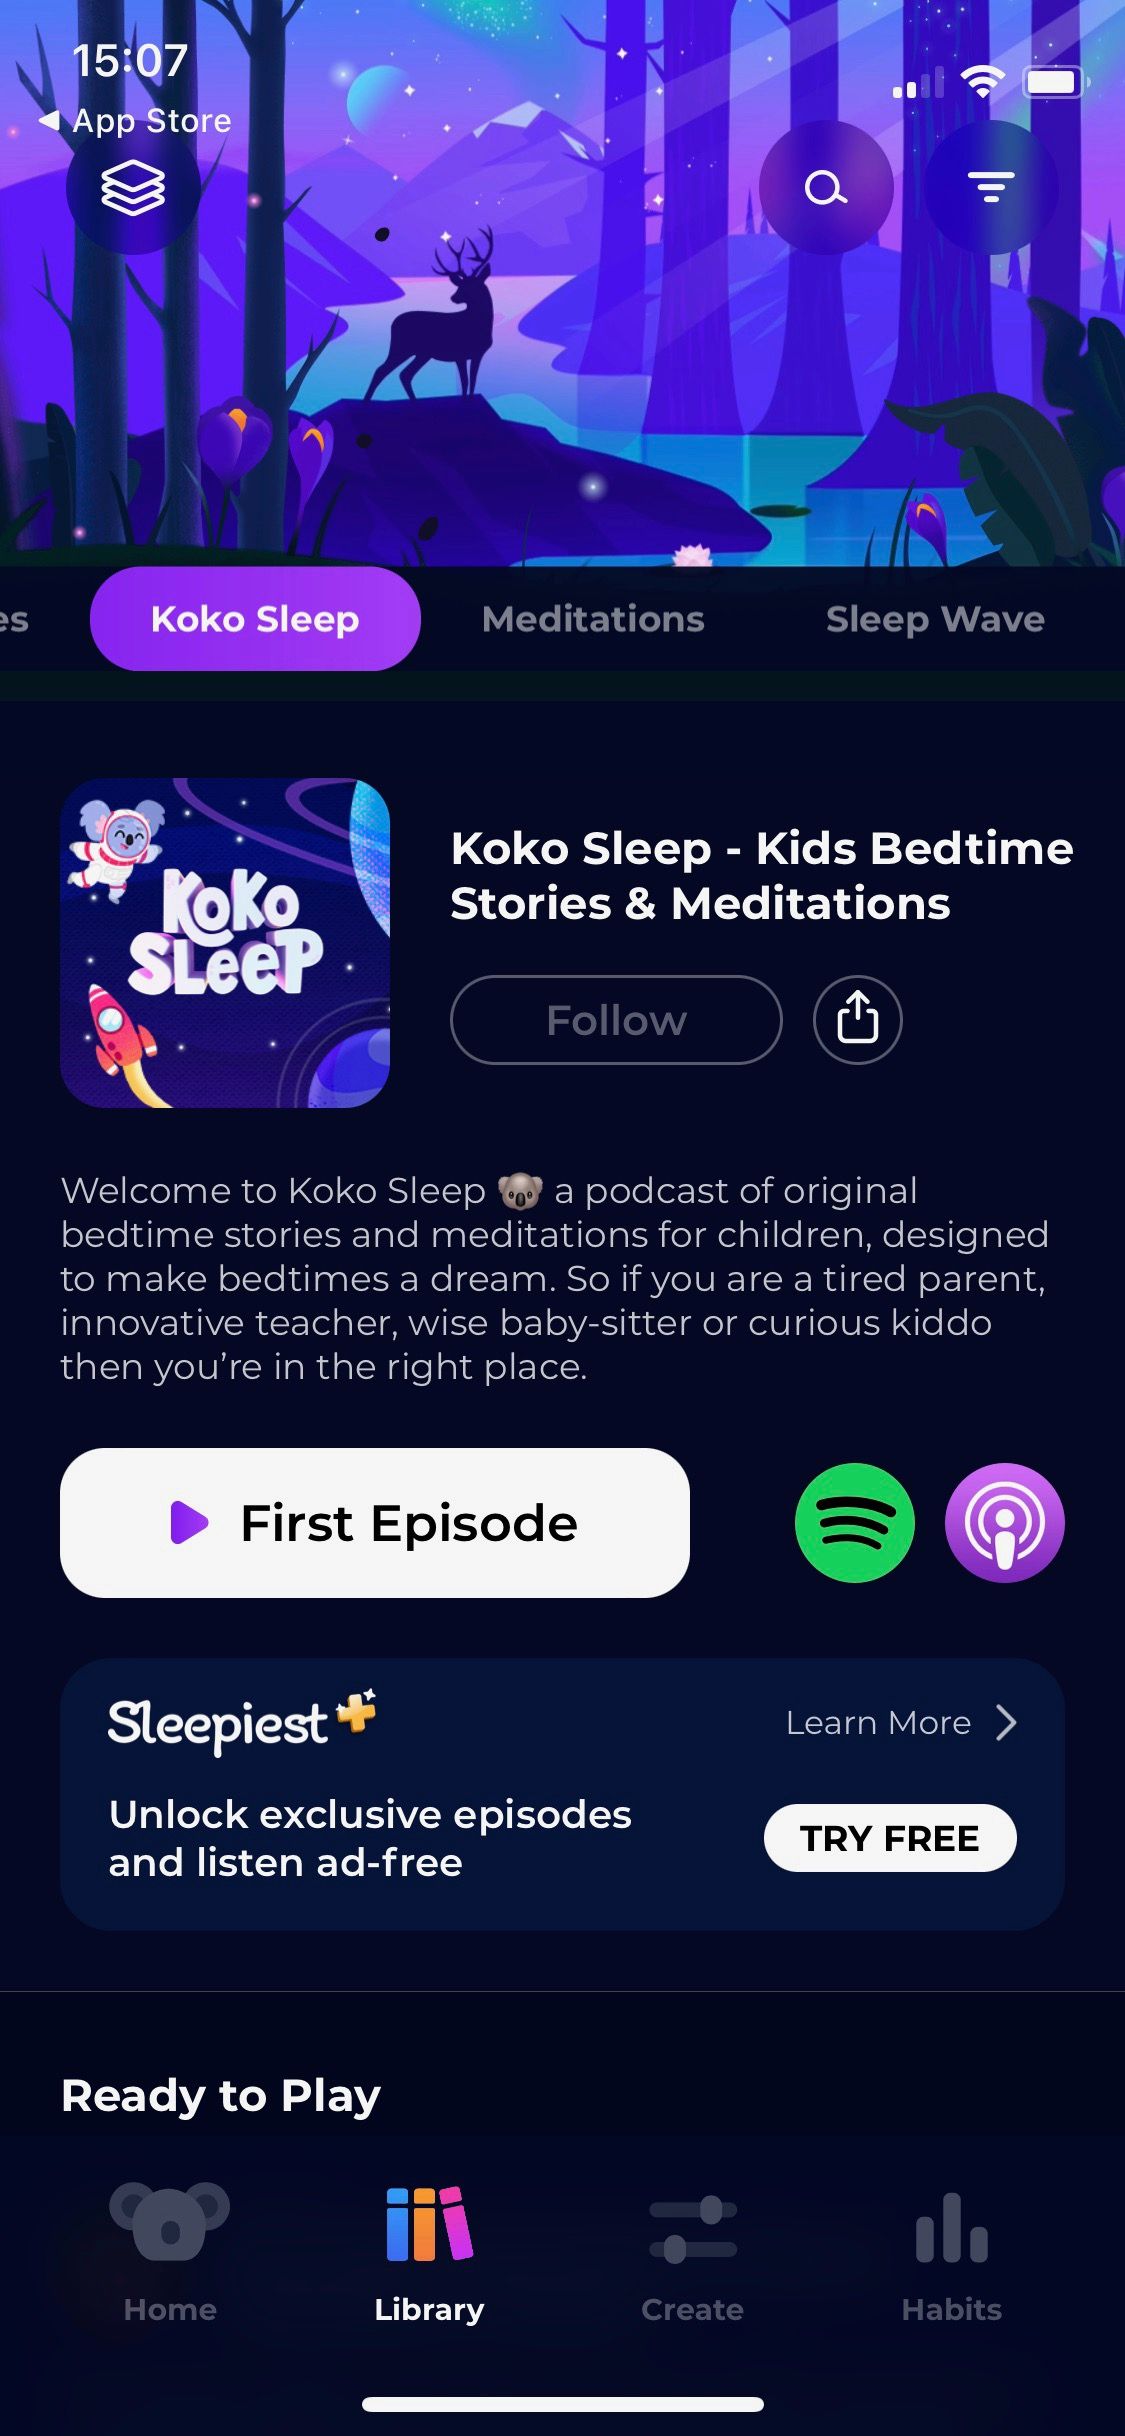 Screenshot of Sleepiest Sleep app showing Koko Sleep section